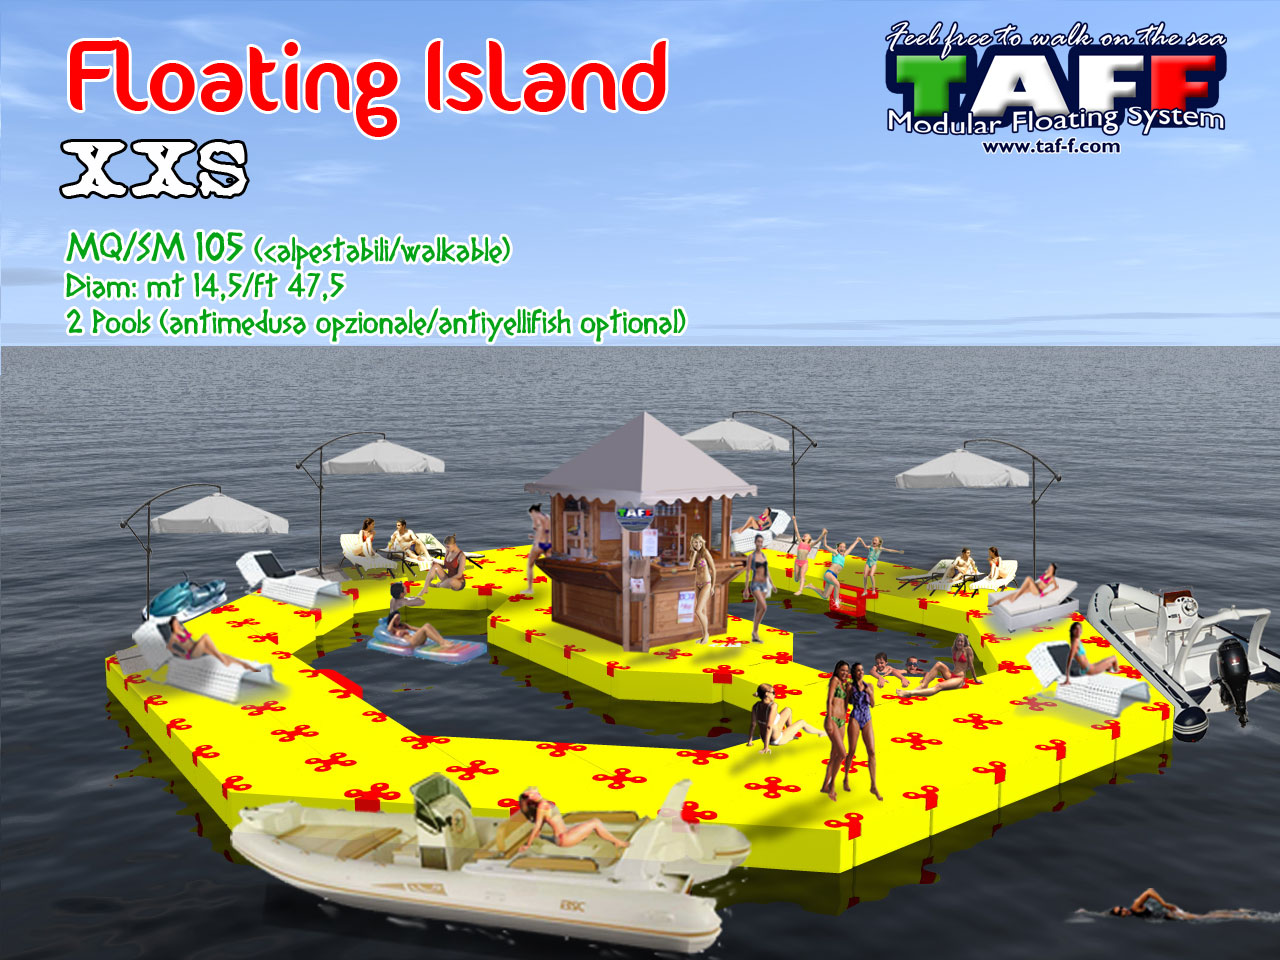 floating-island-xxs-news.jpg